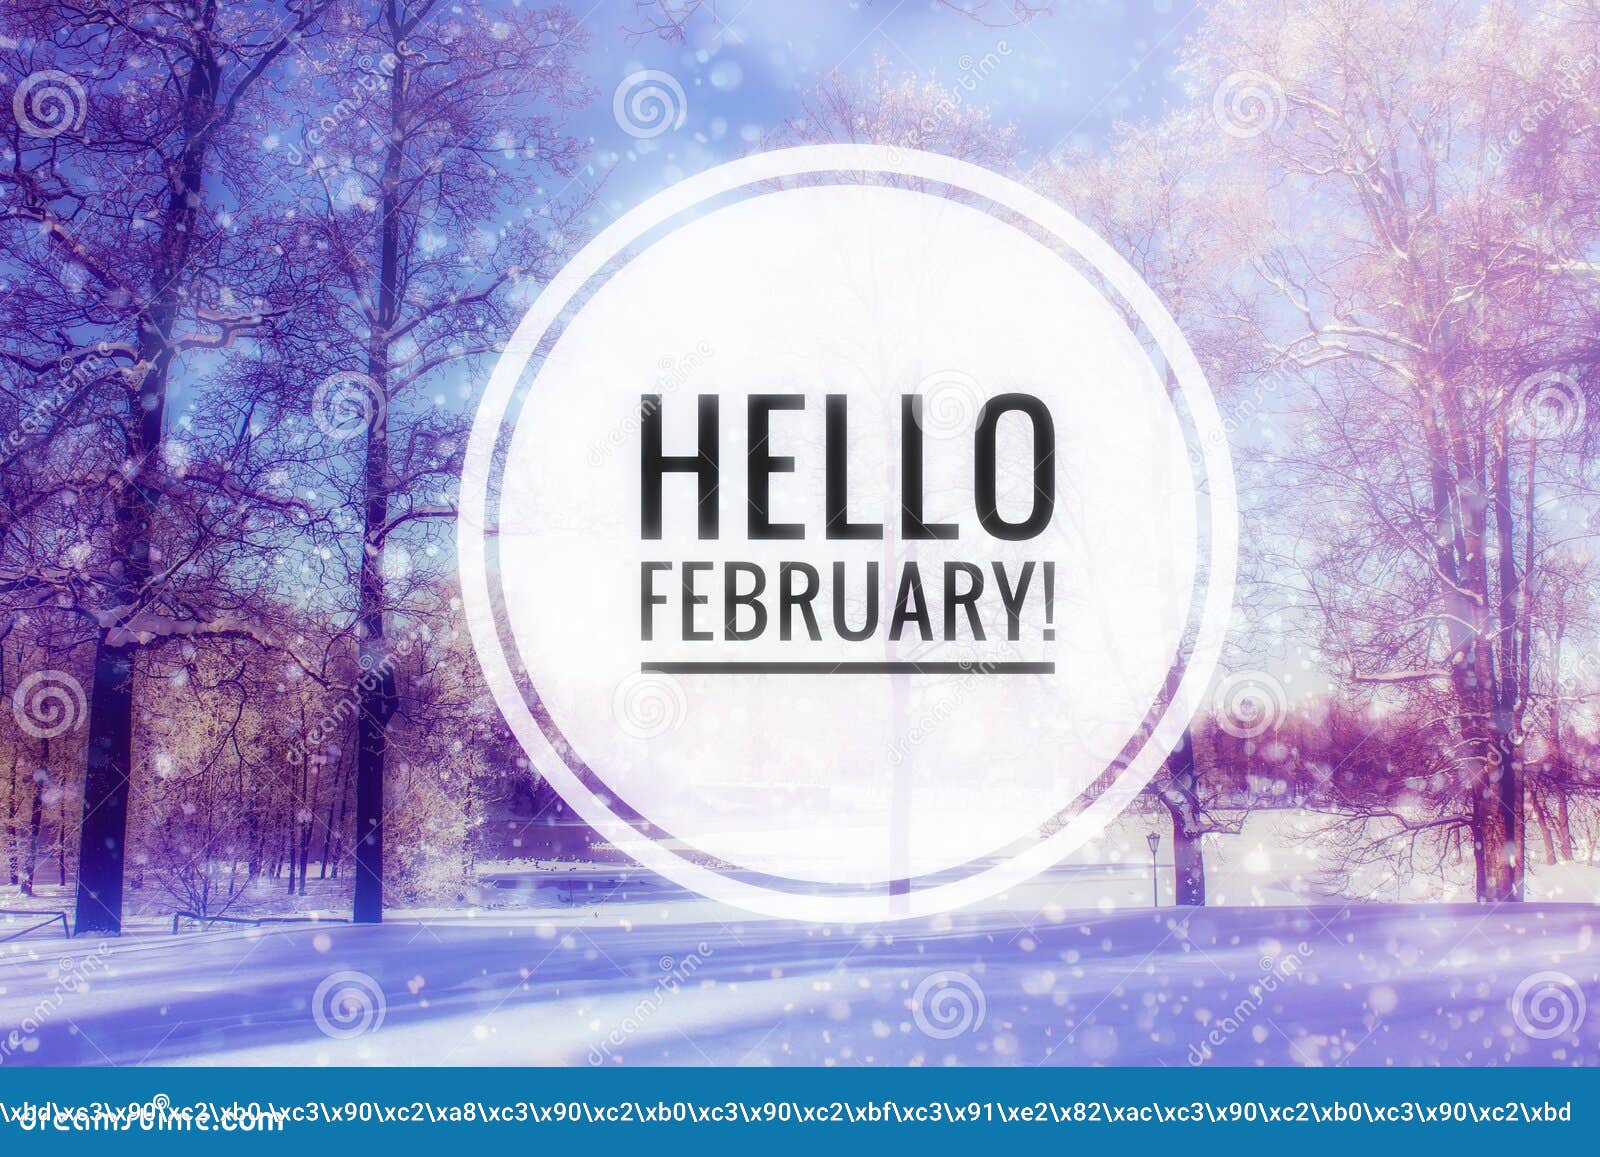 Hello february. Hello февраль. Hello February картинка. Привет февраль надпись. Февраль hello February.